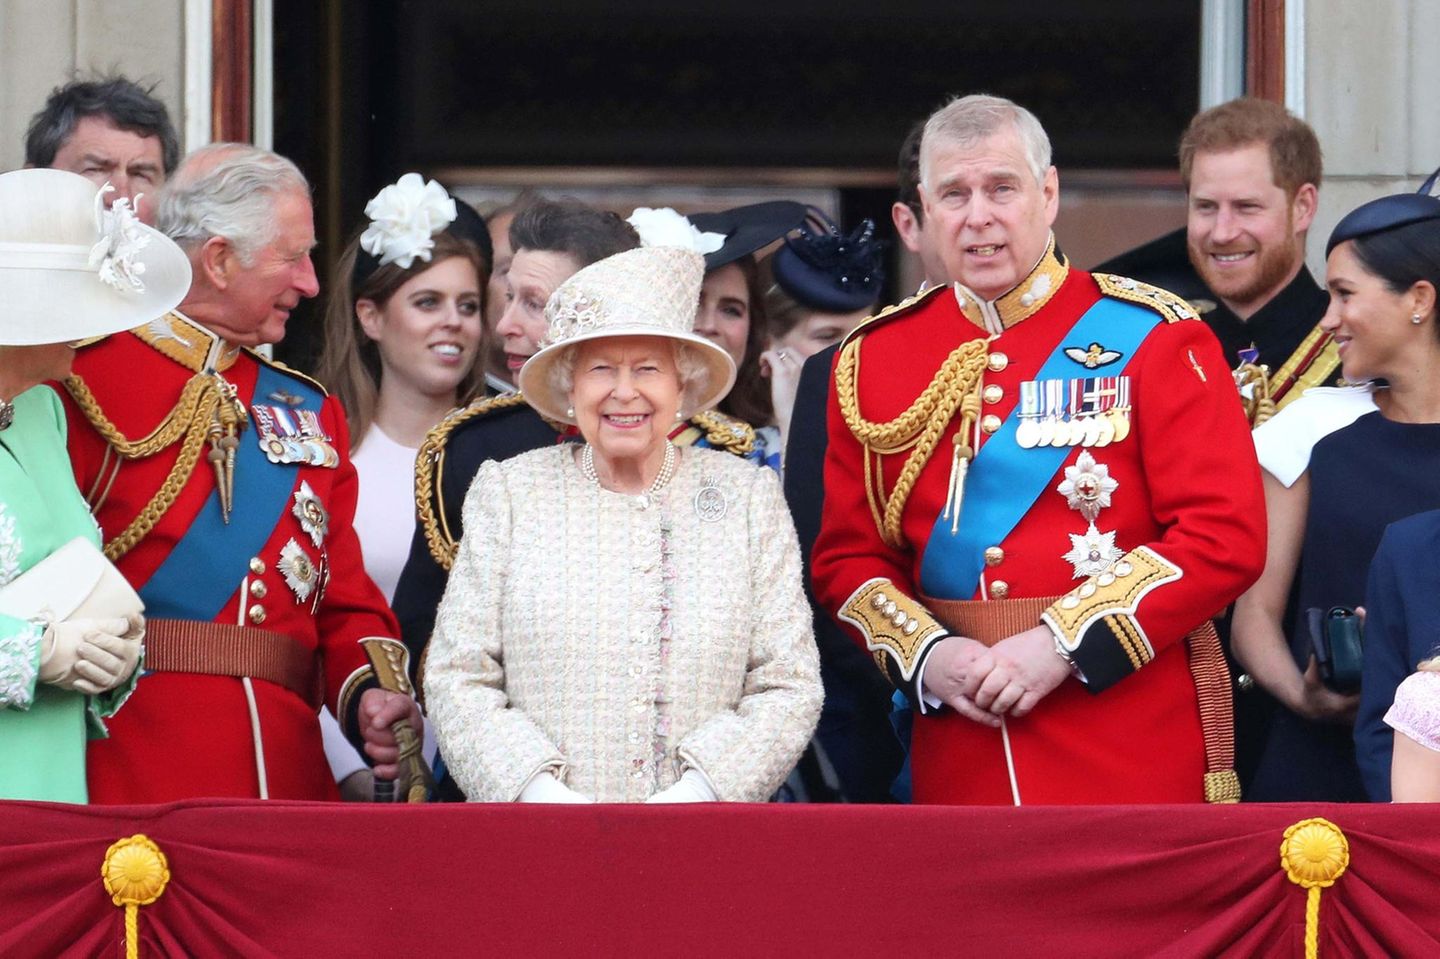 Queen Elizabeth schenkt ihren vielen tausend Gratulanten vom Balkon aus ein strahlendes Lächeln.